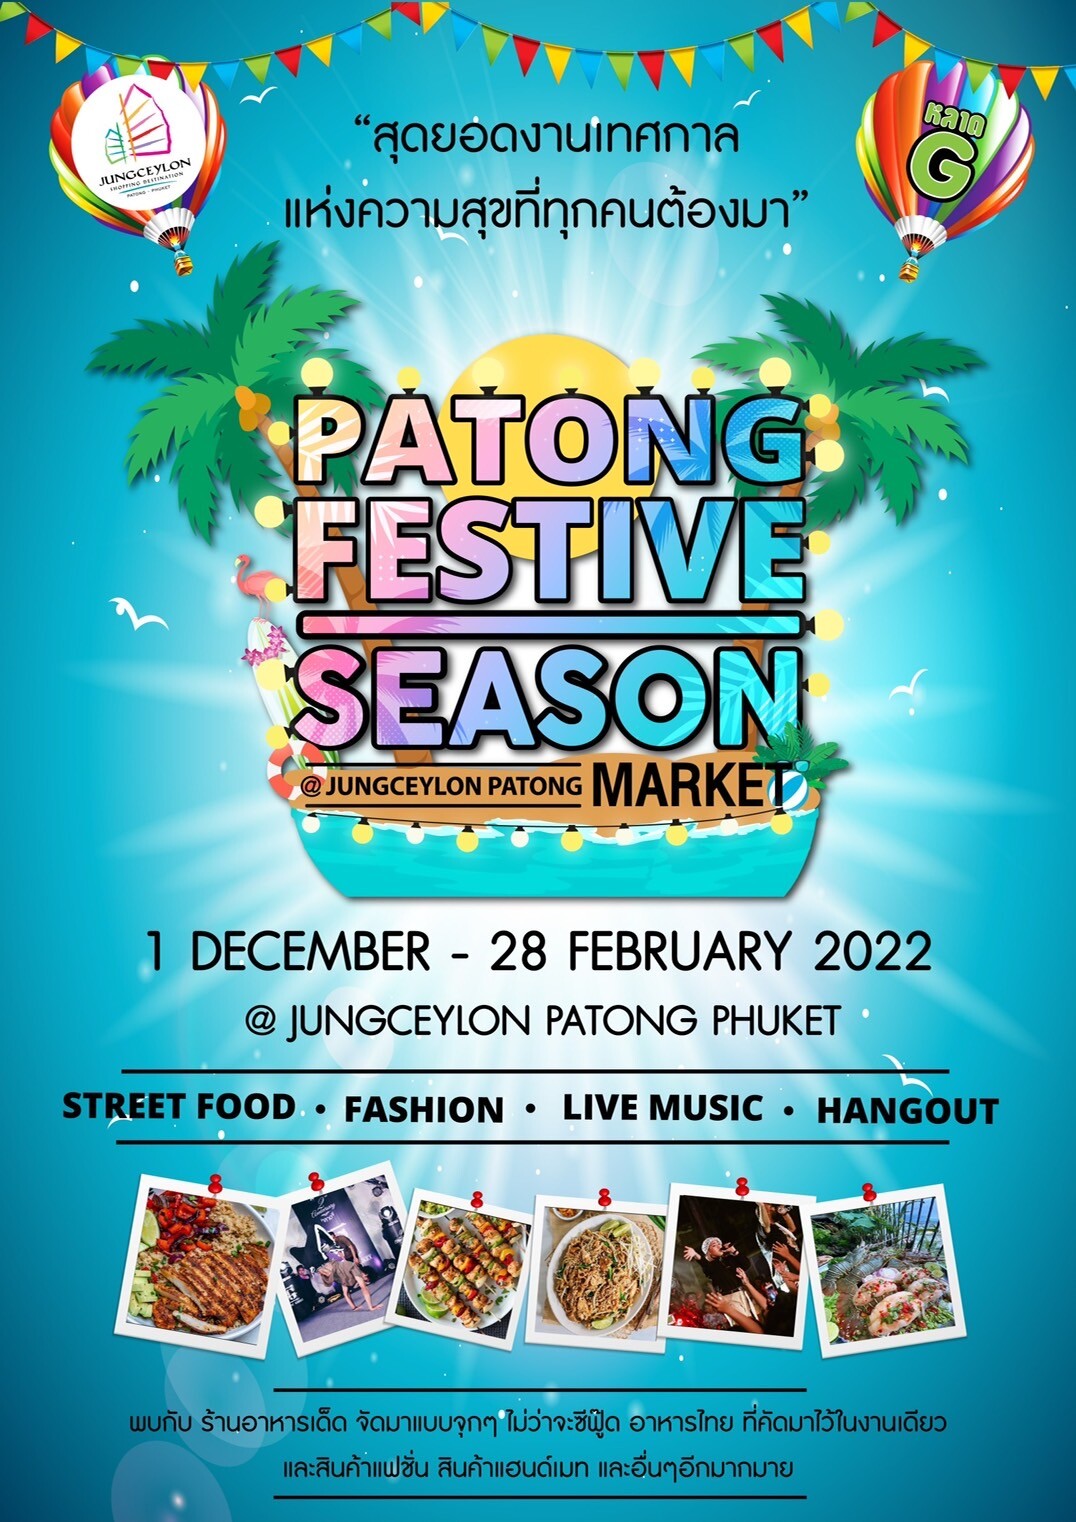 "จังซีลอน" ชวนร่วมงานเทศกาลแห่งความสุข "Patong Festive Season @Jungceylon Patong Market"